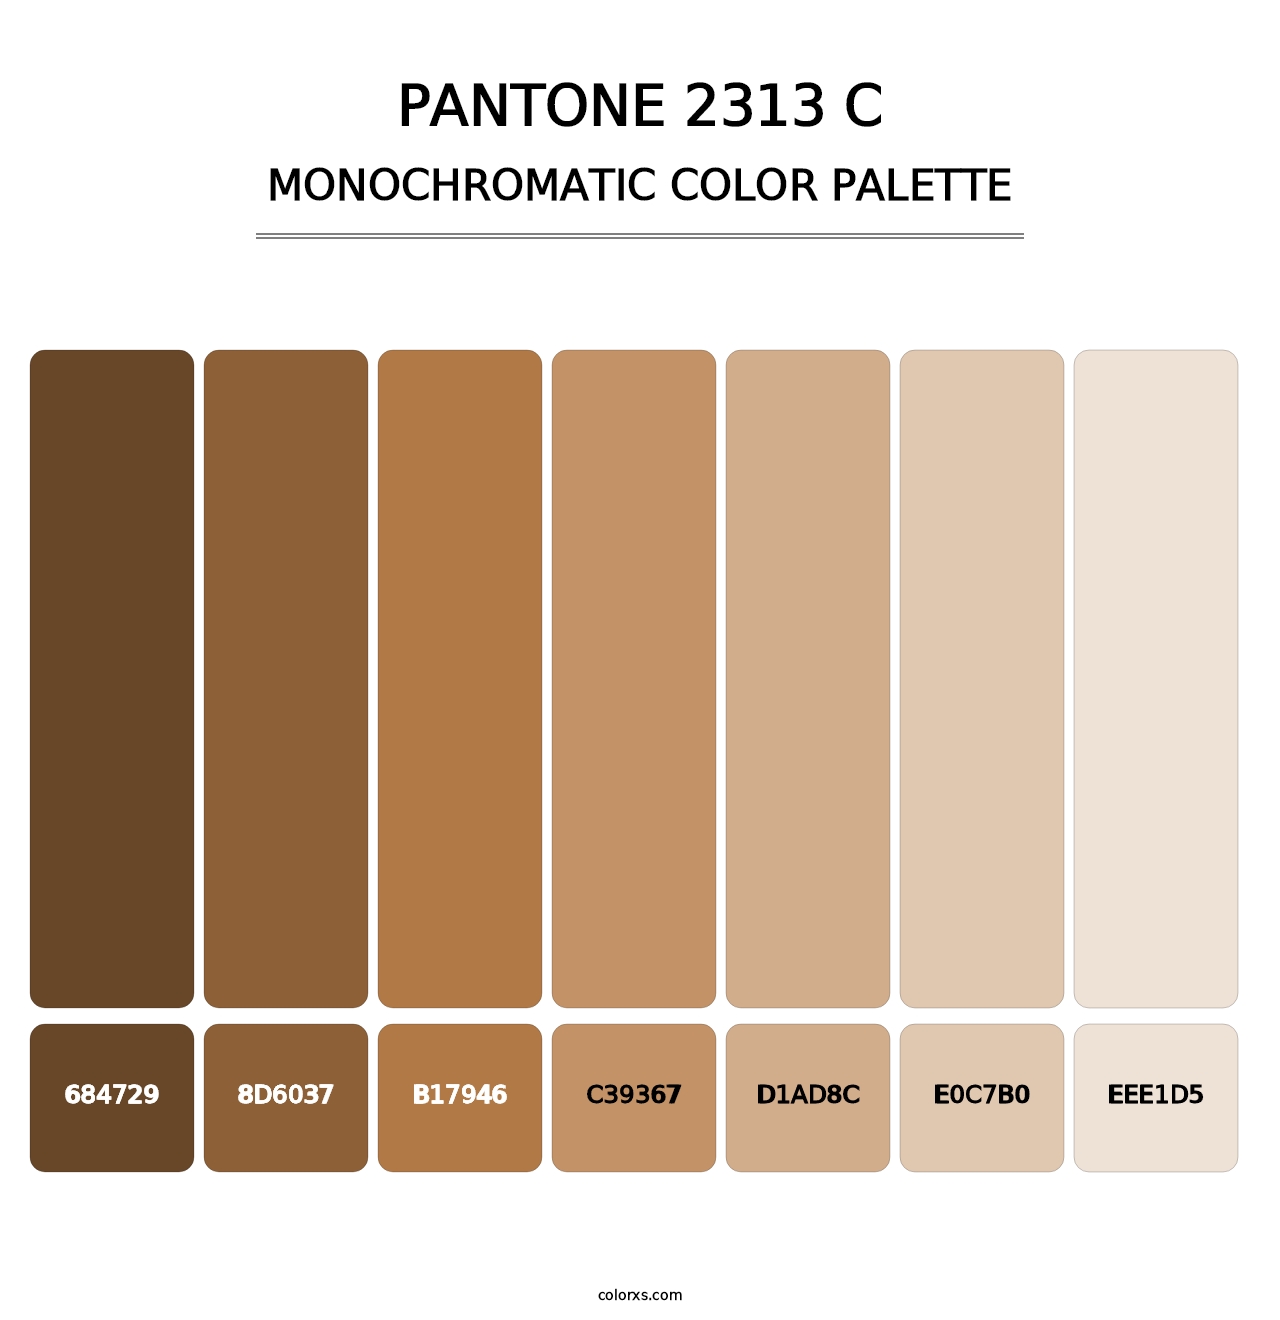 PANTONE 2313 C - Monochromatic Color Palette